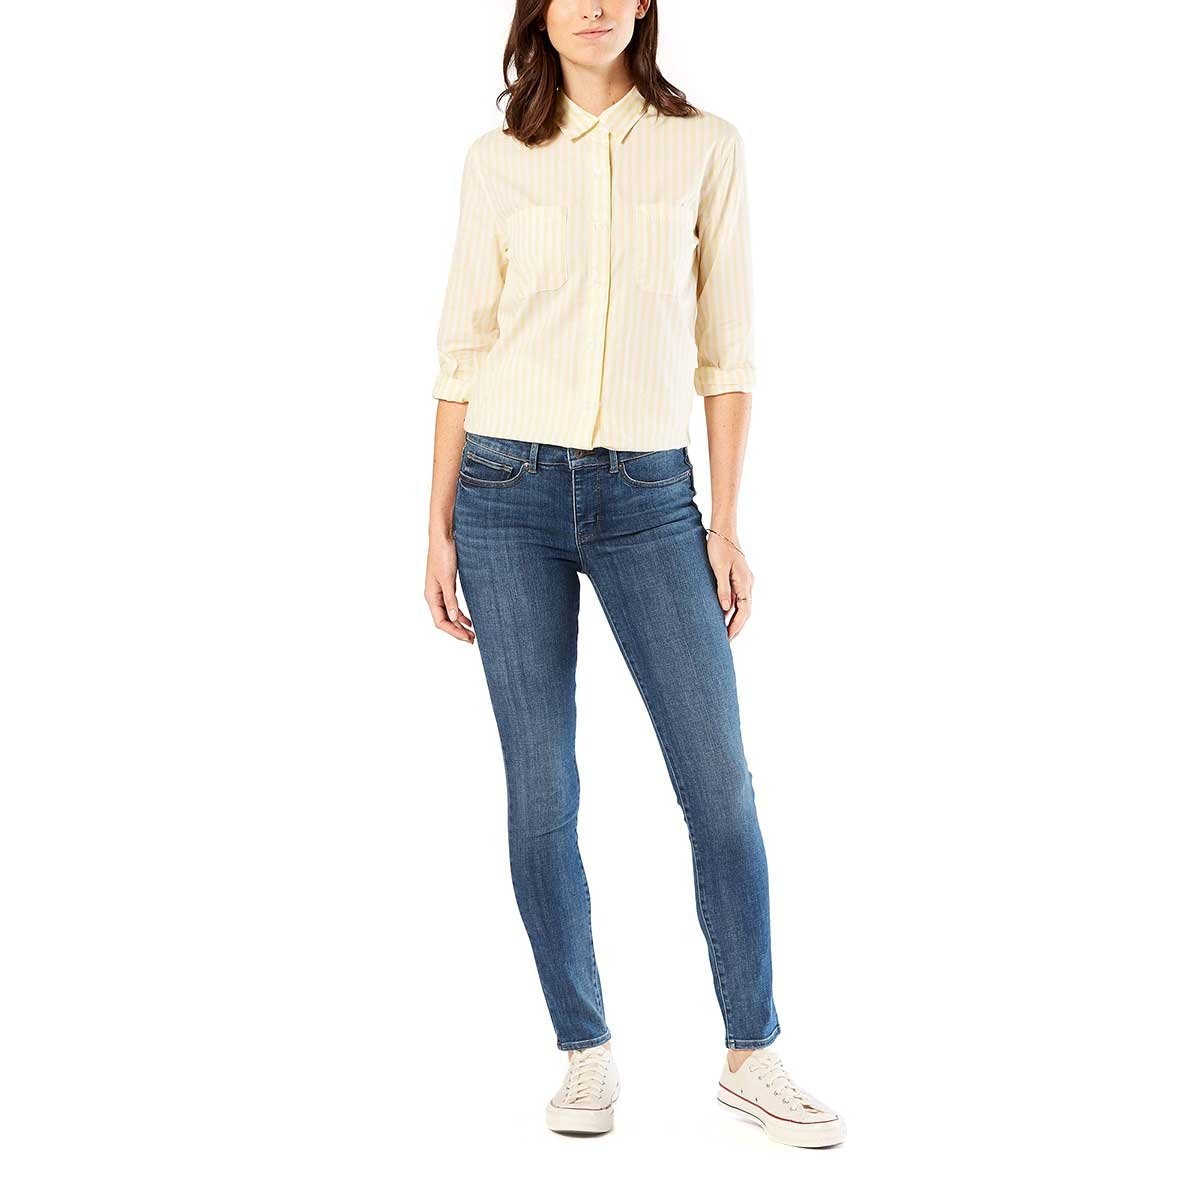 Jeans mid-rise skinny valencia Índigo dockers - Sears